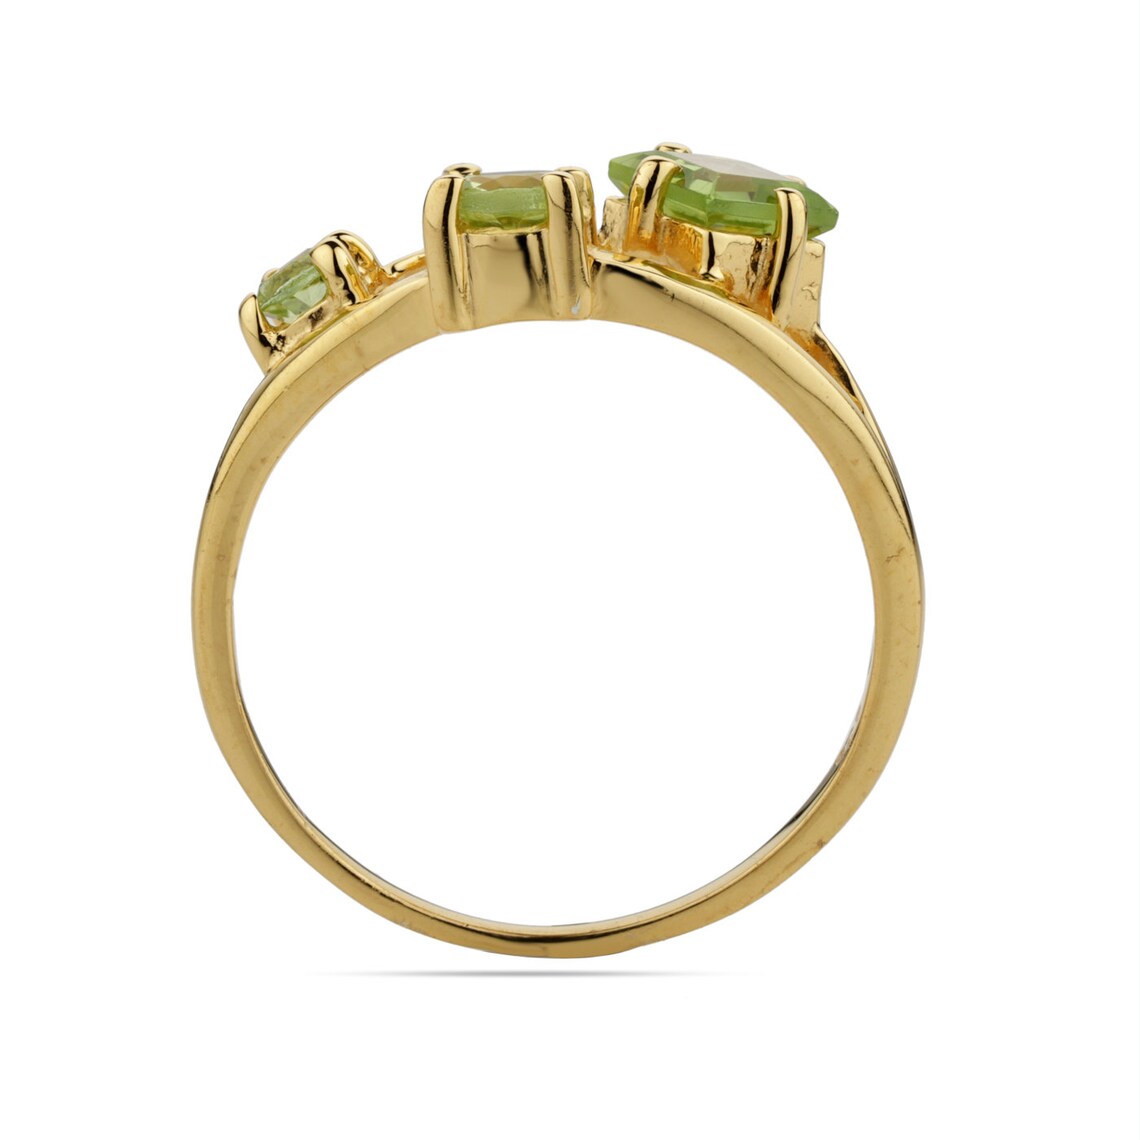 Gold Peridot Ring, Natural Peridot Gemstone Ring - Peridot Prong Setting Ring - Peridot Pear Cut Ring - Handmade Ring - Dainty Ring